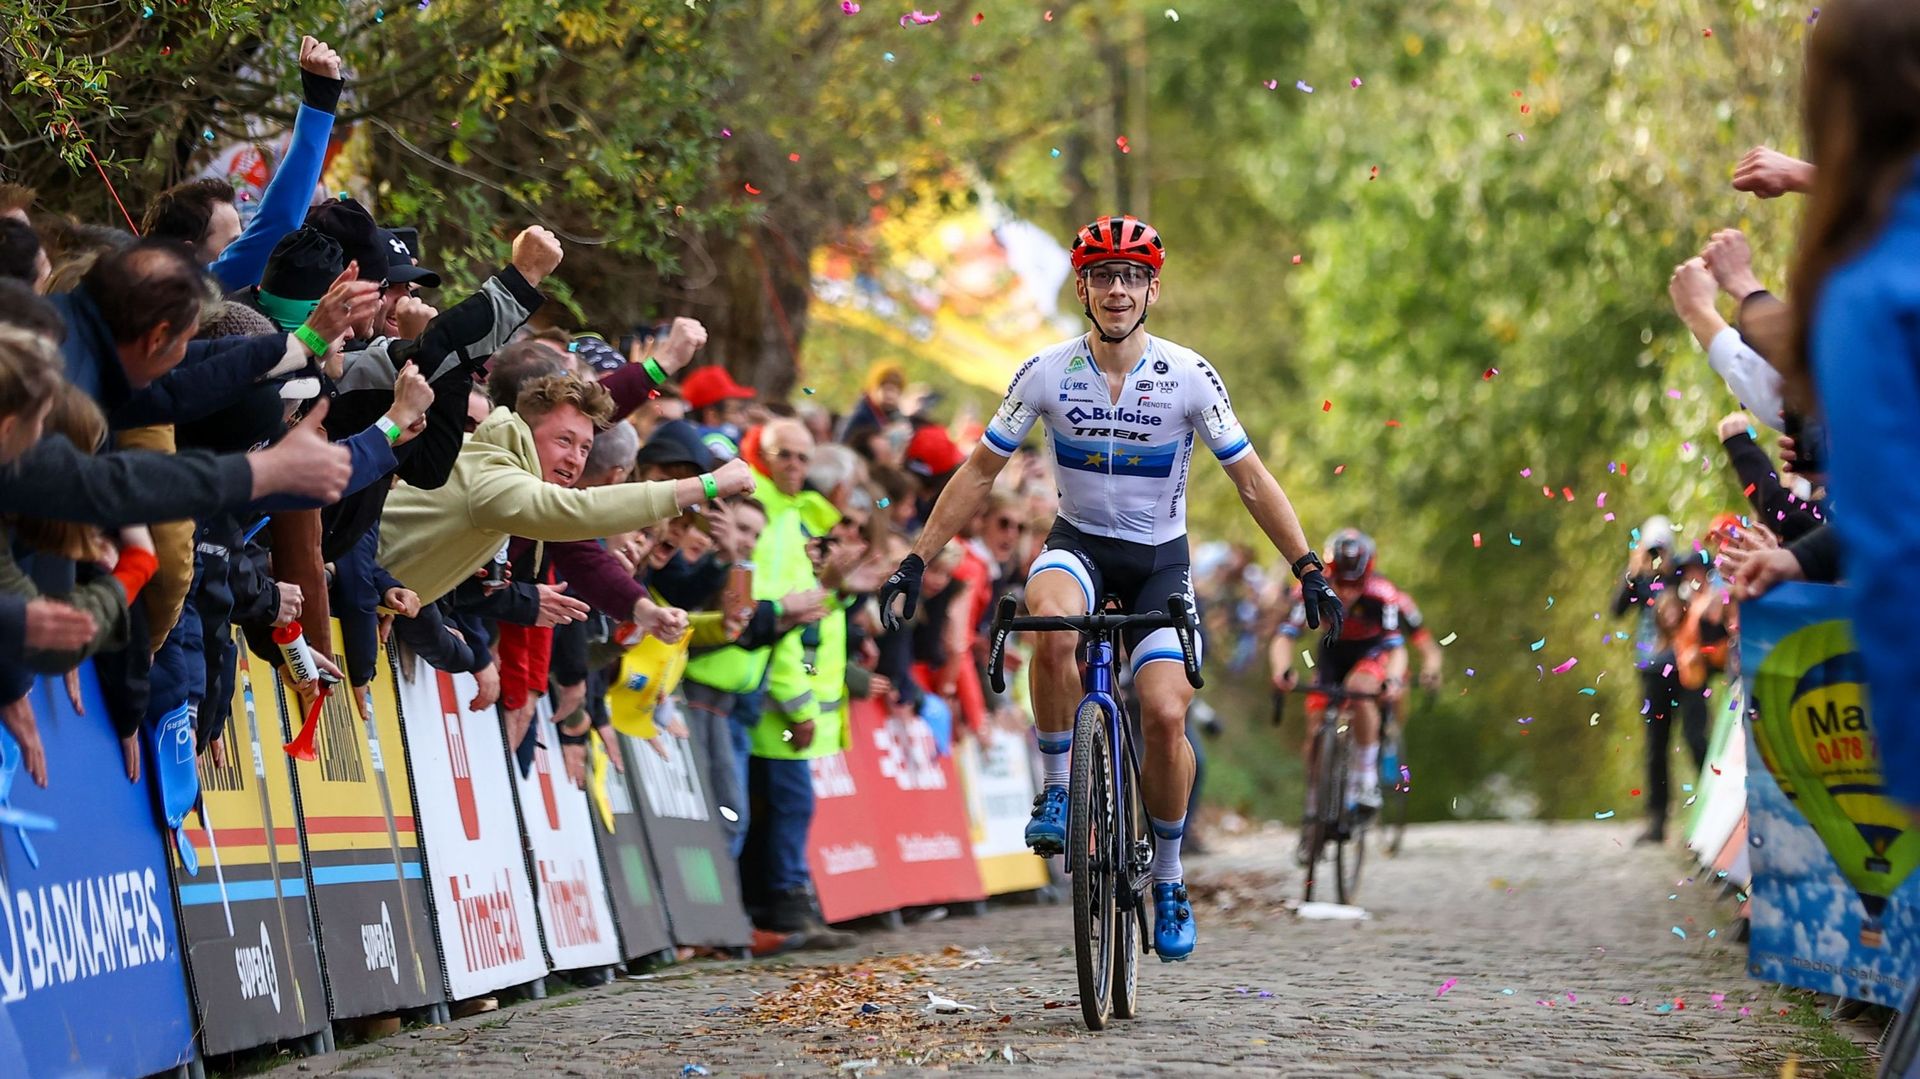 Le Néerlandais Lars van der Haar est annoncé comme le favori des championnats d’Europe de cyclocross qui se dérouleront ce dimanche sur le circuit de la Citadelle de Namur. Confiant, le clan belge devra garder le Néerlandais sous bonne garde jusqu’au bout